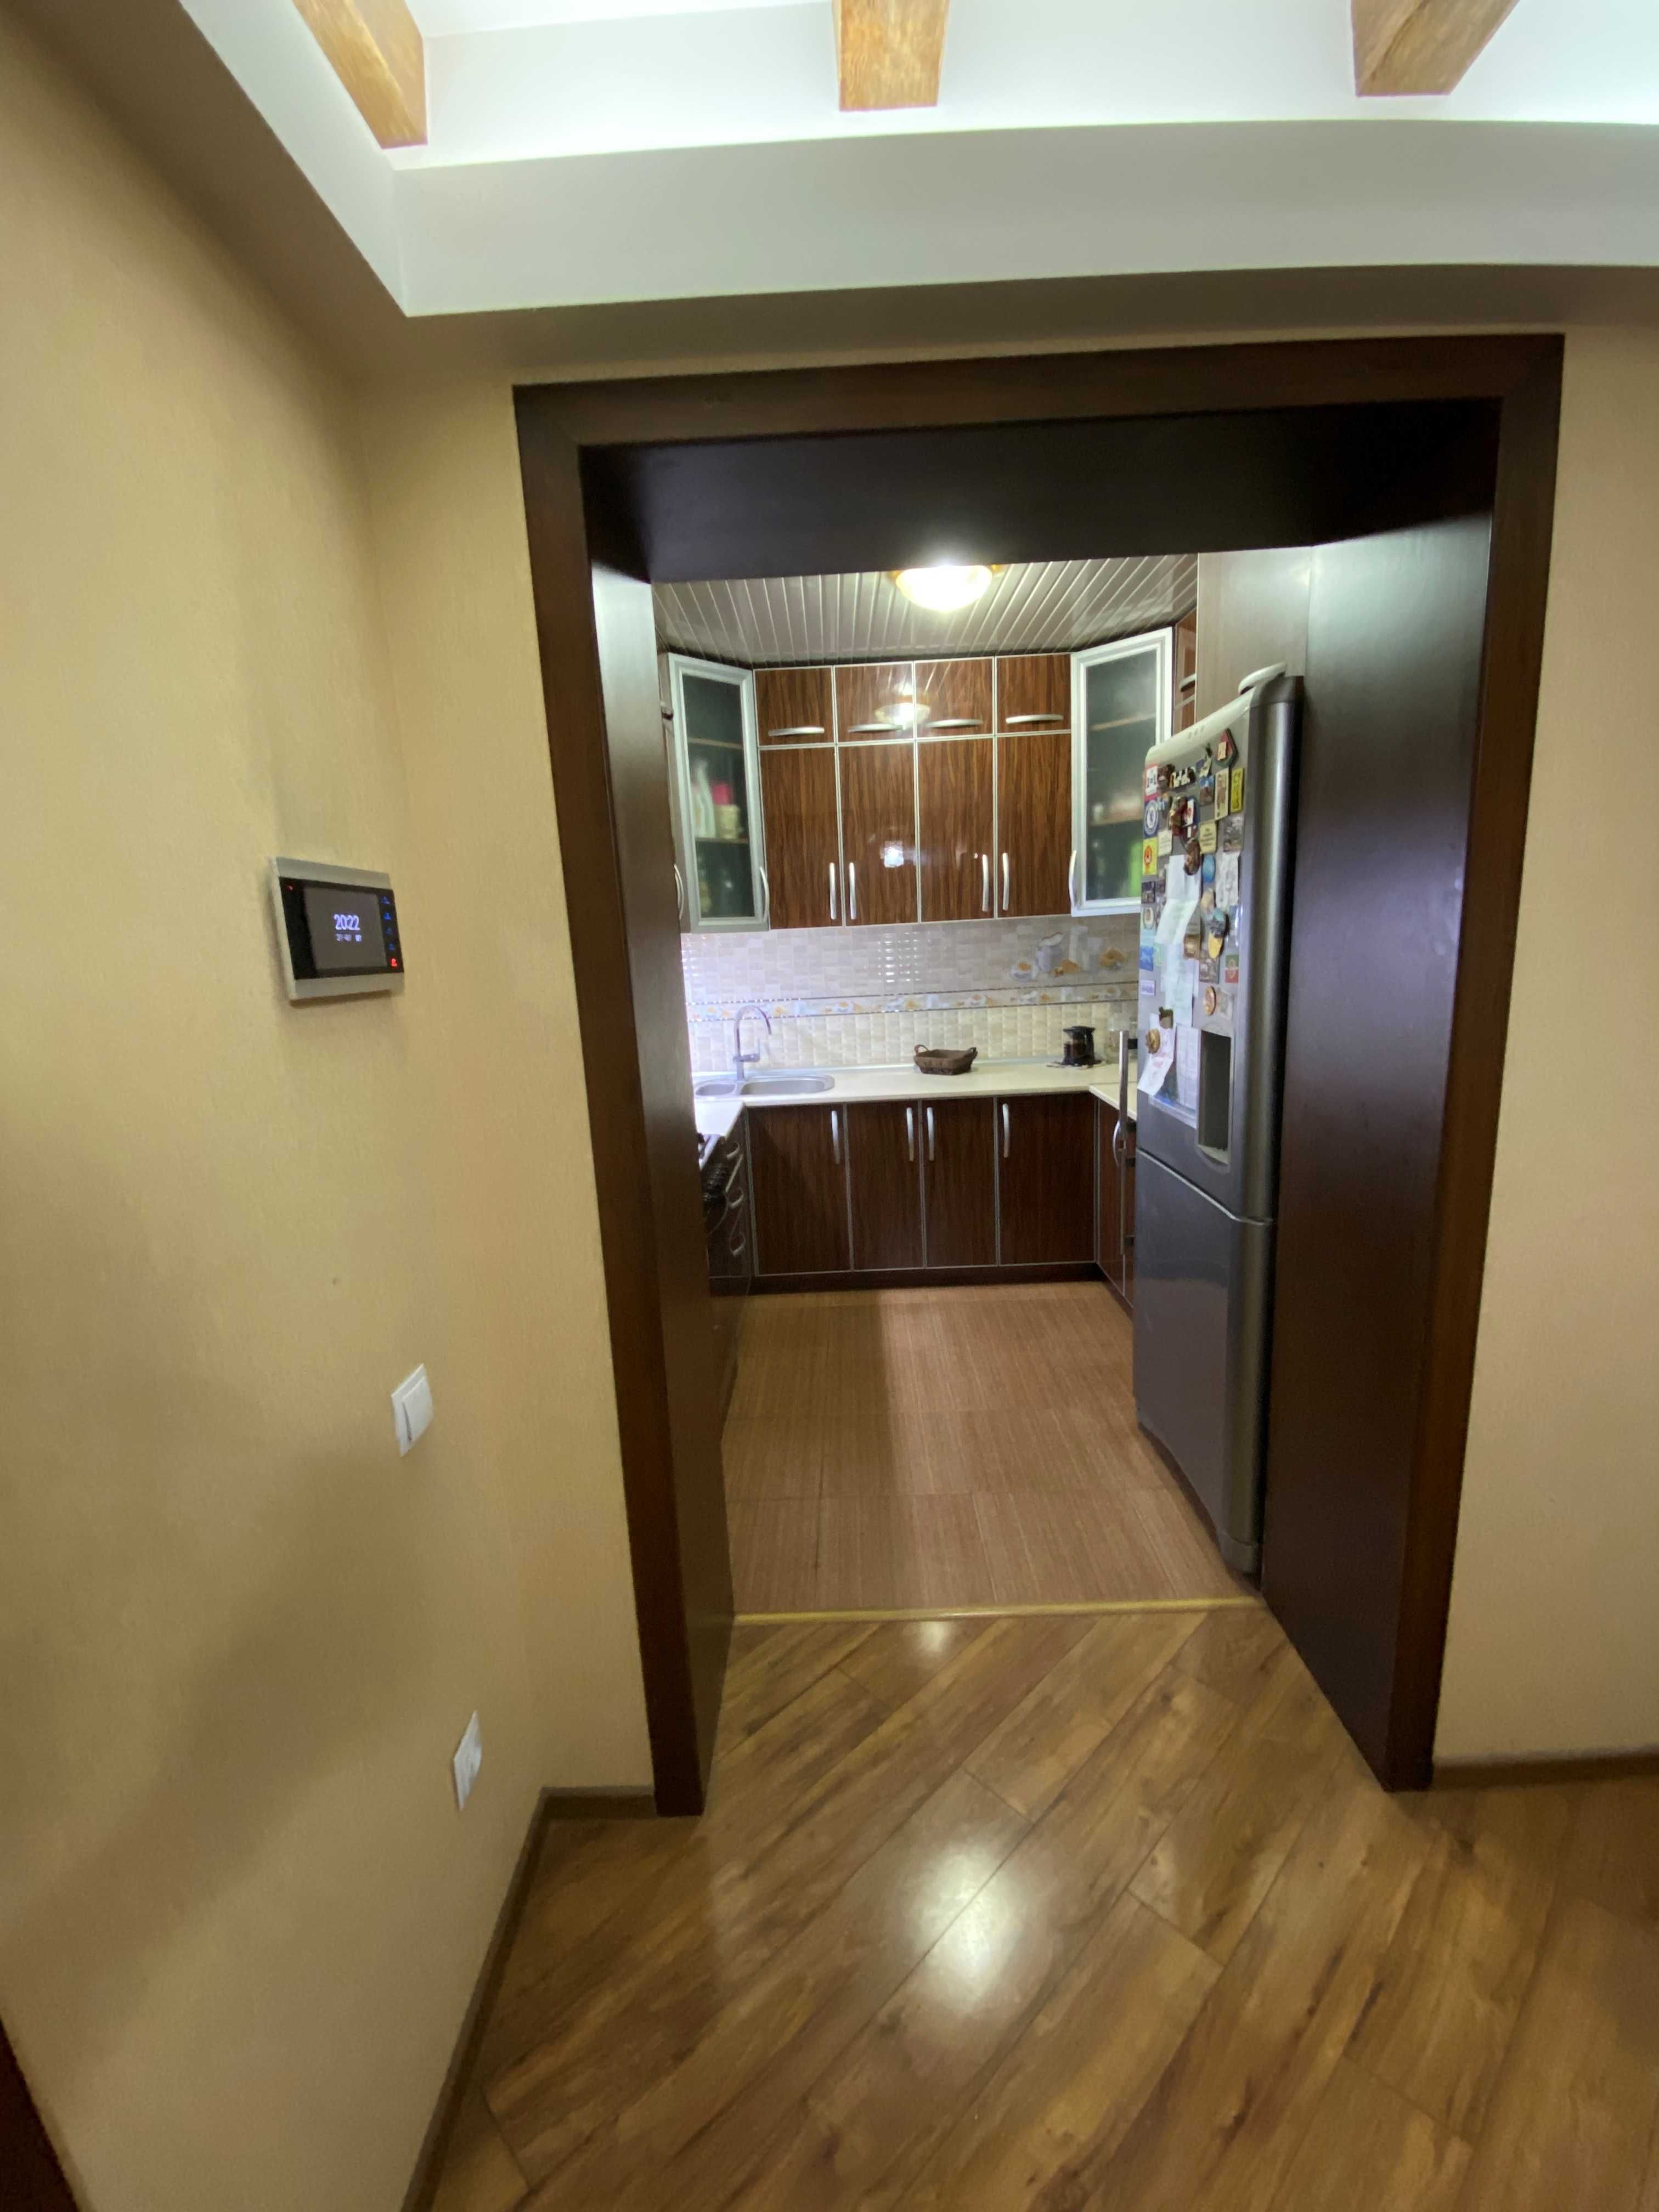 Ц-1 Продается 5-ти комнатная квартира с качественным евро ремонтом